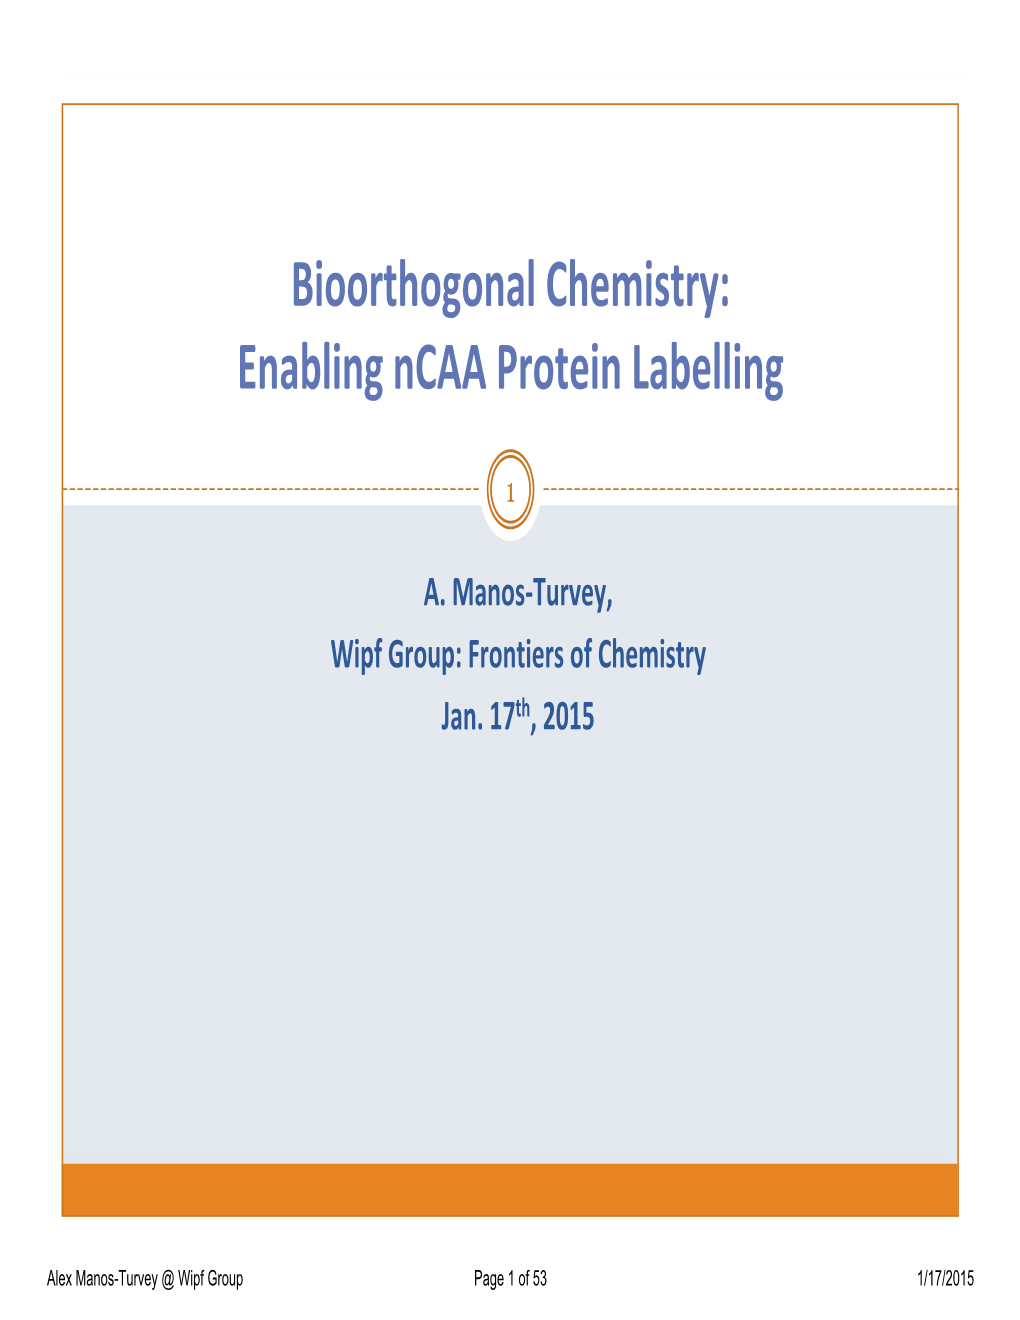 Bioorthogonal Chemistry: Enabling Ncaa Protein Labelling